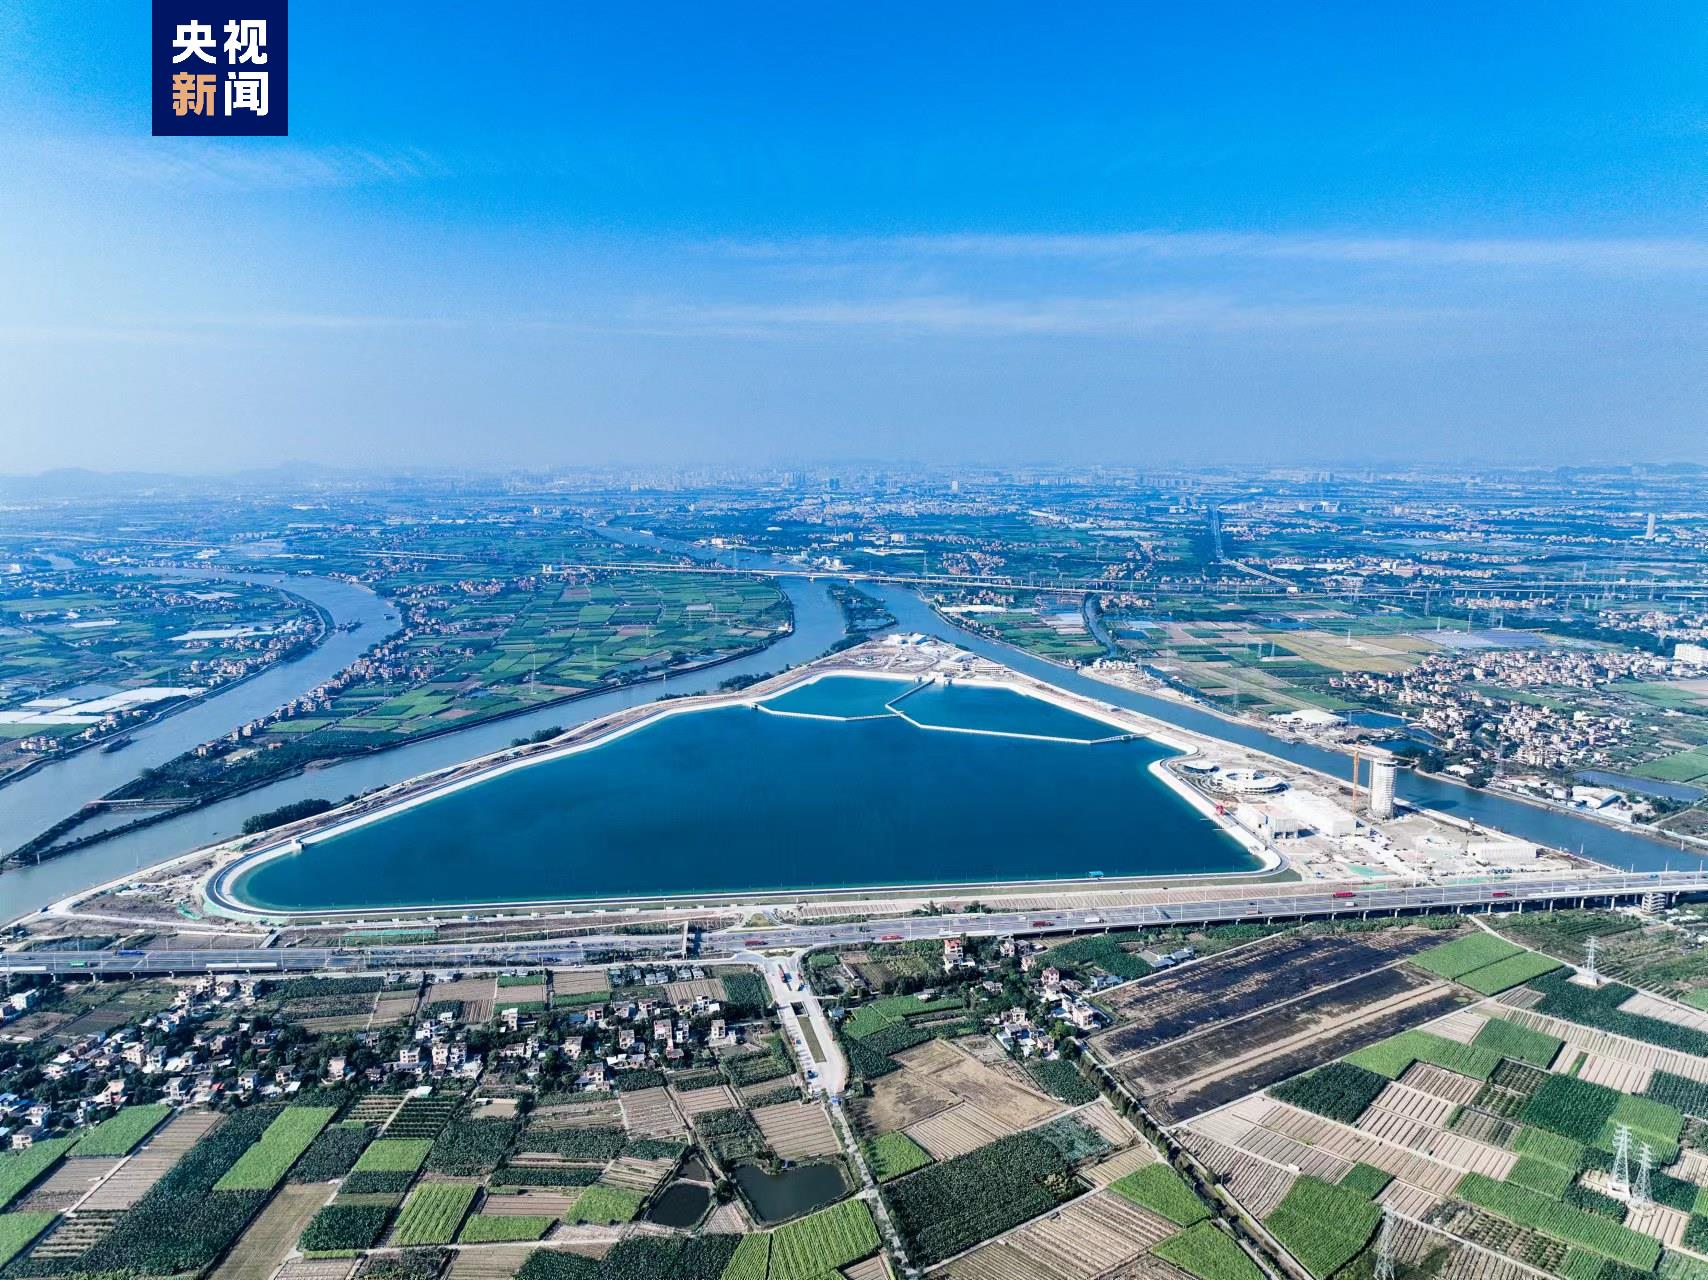 İnci Nehri Deltası Su Kaynakları Tahsis Projesi faaliyete geçti